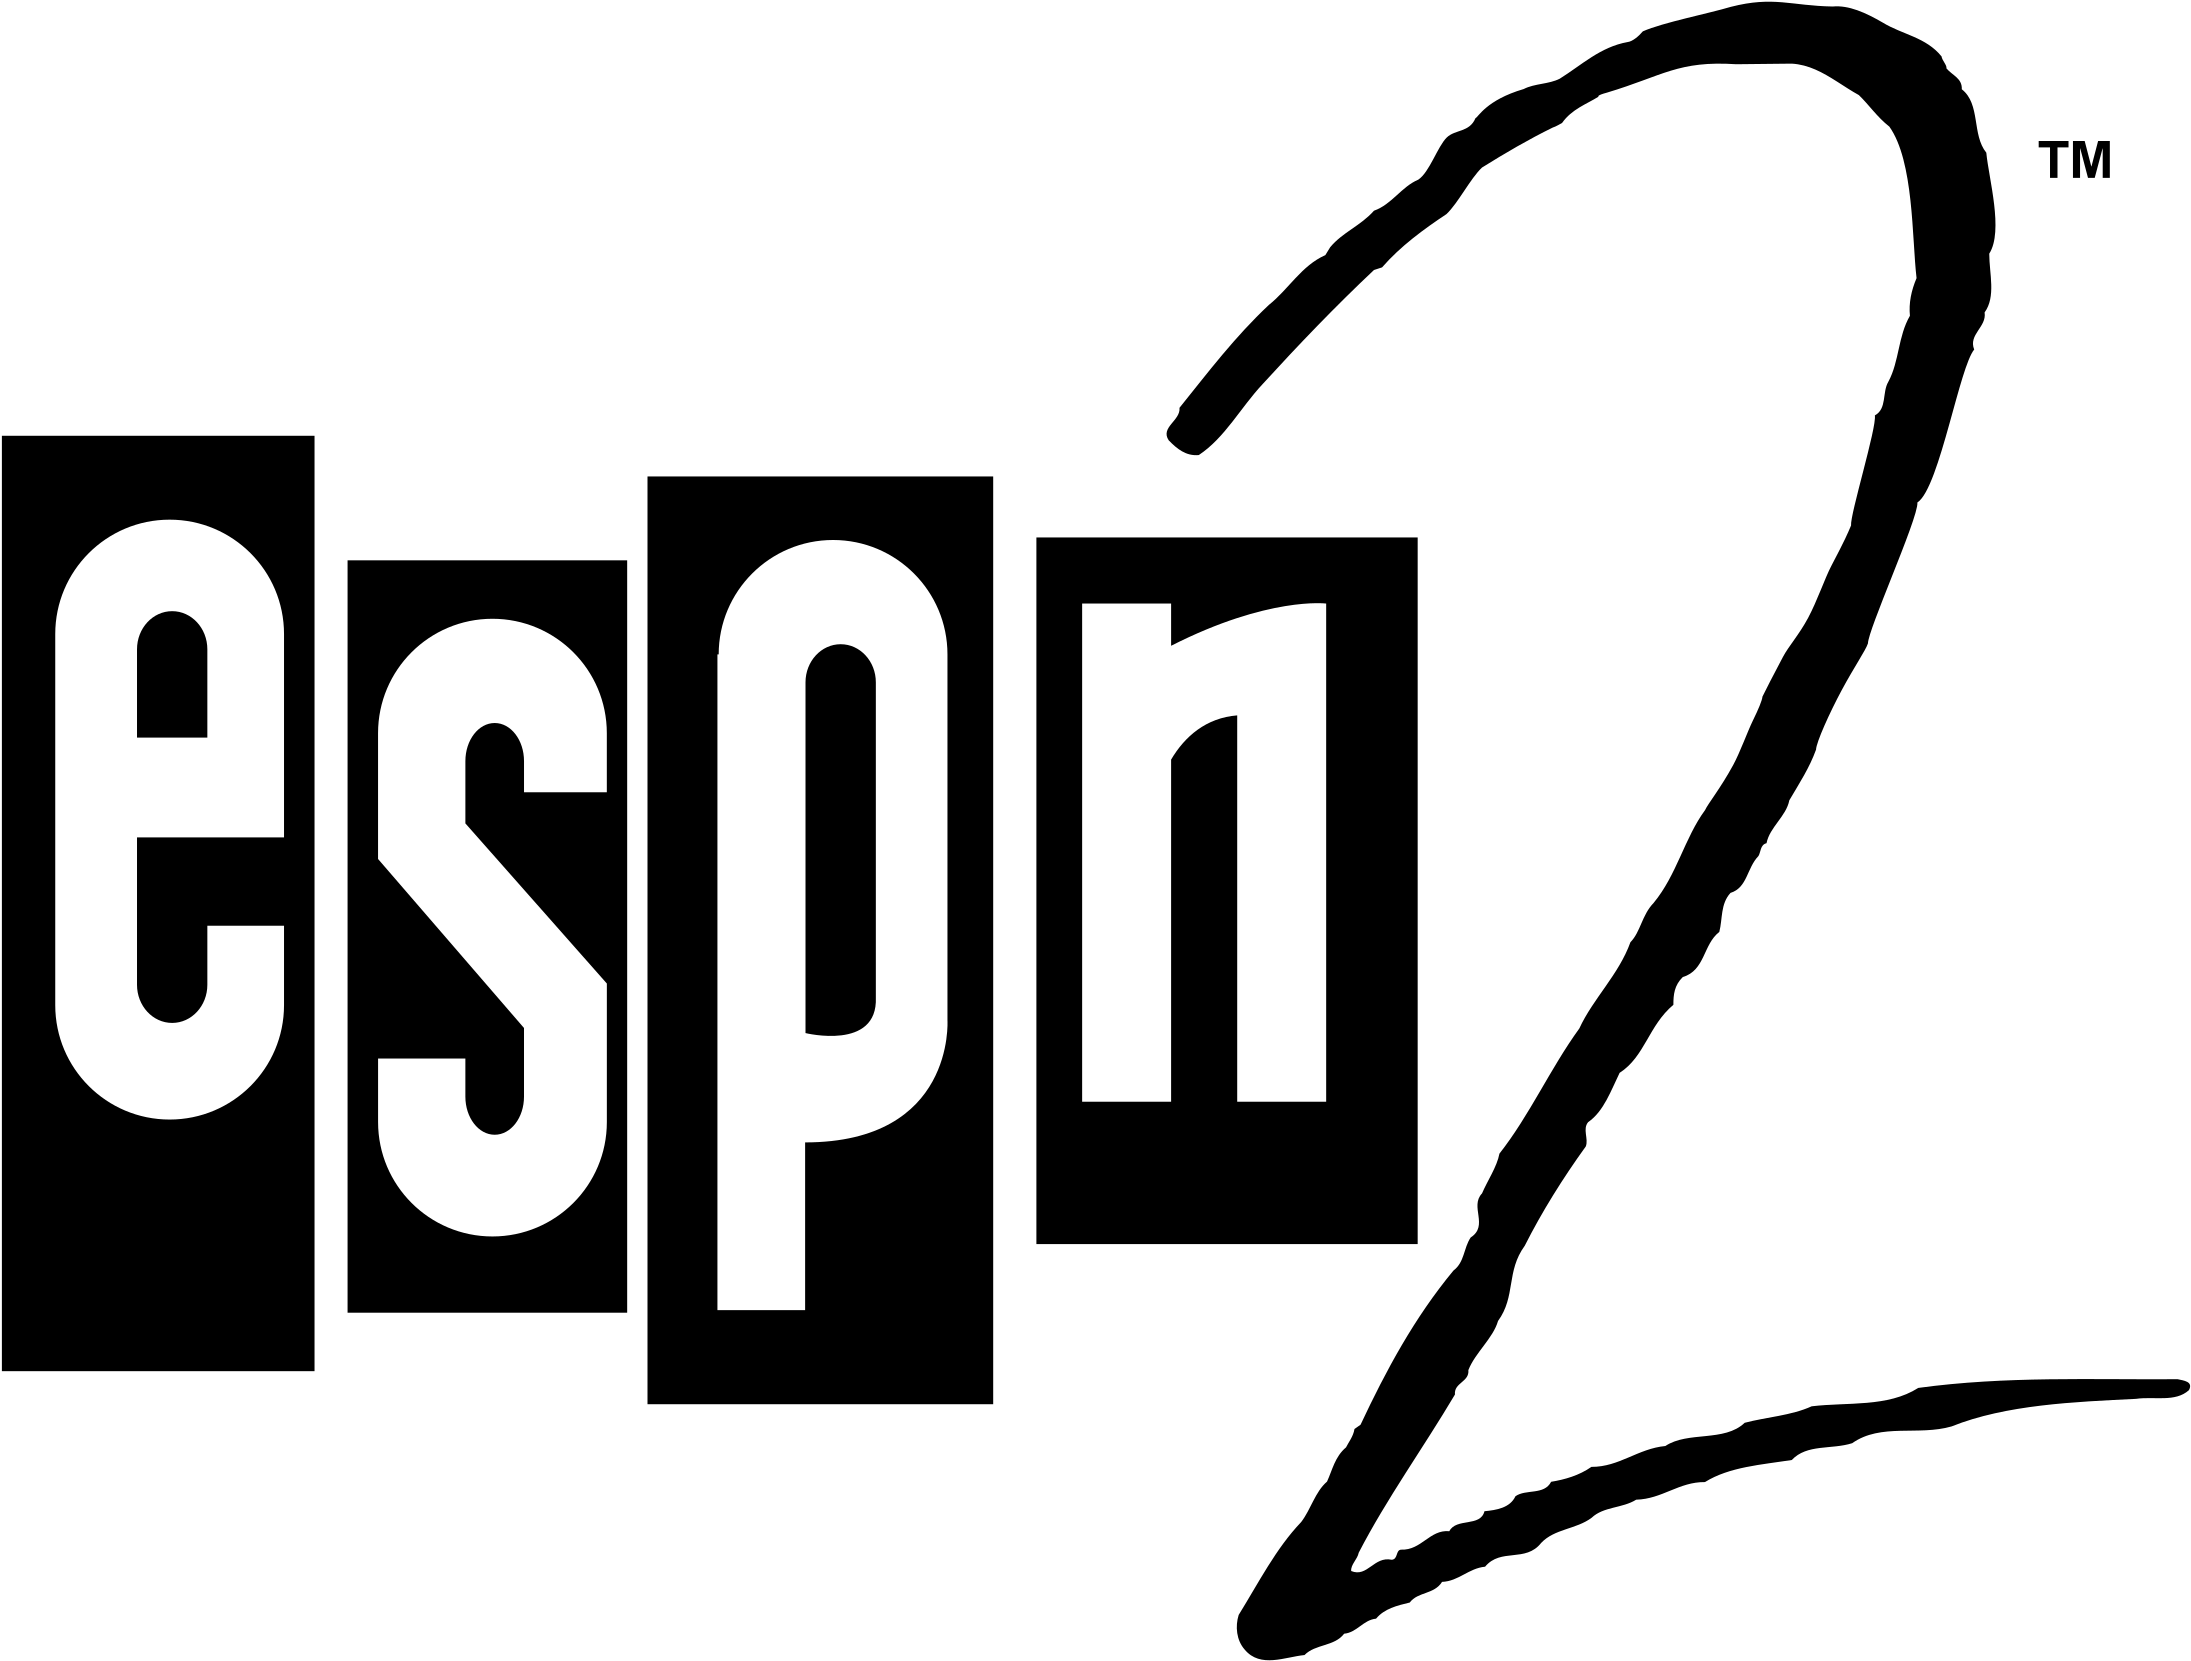 Espn 2 Logo Png Transparent - Espn2 Original Logo (2400x2400), Png Download